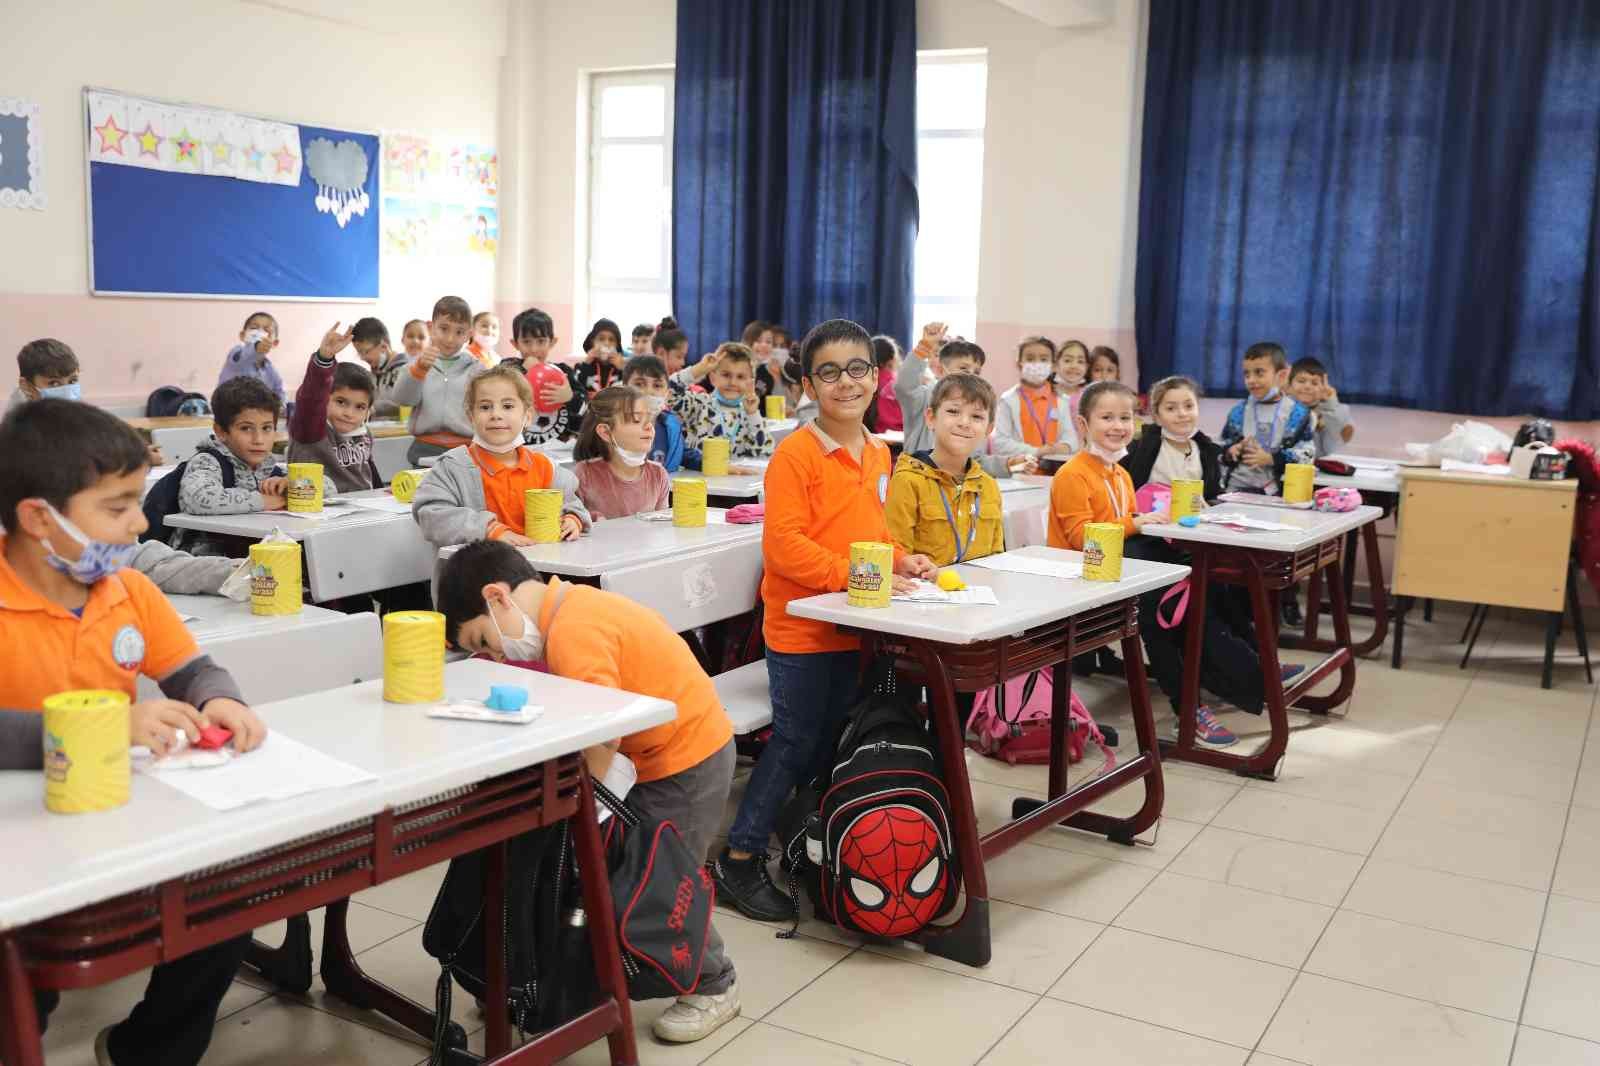 Başakşehir Belediyesinden okullara sıfır atık ödülü #istanbul